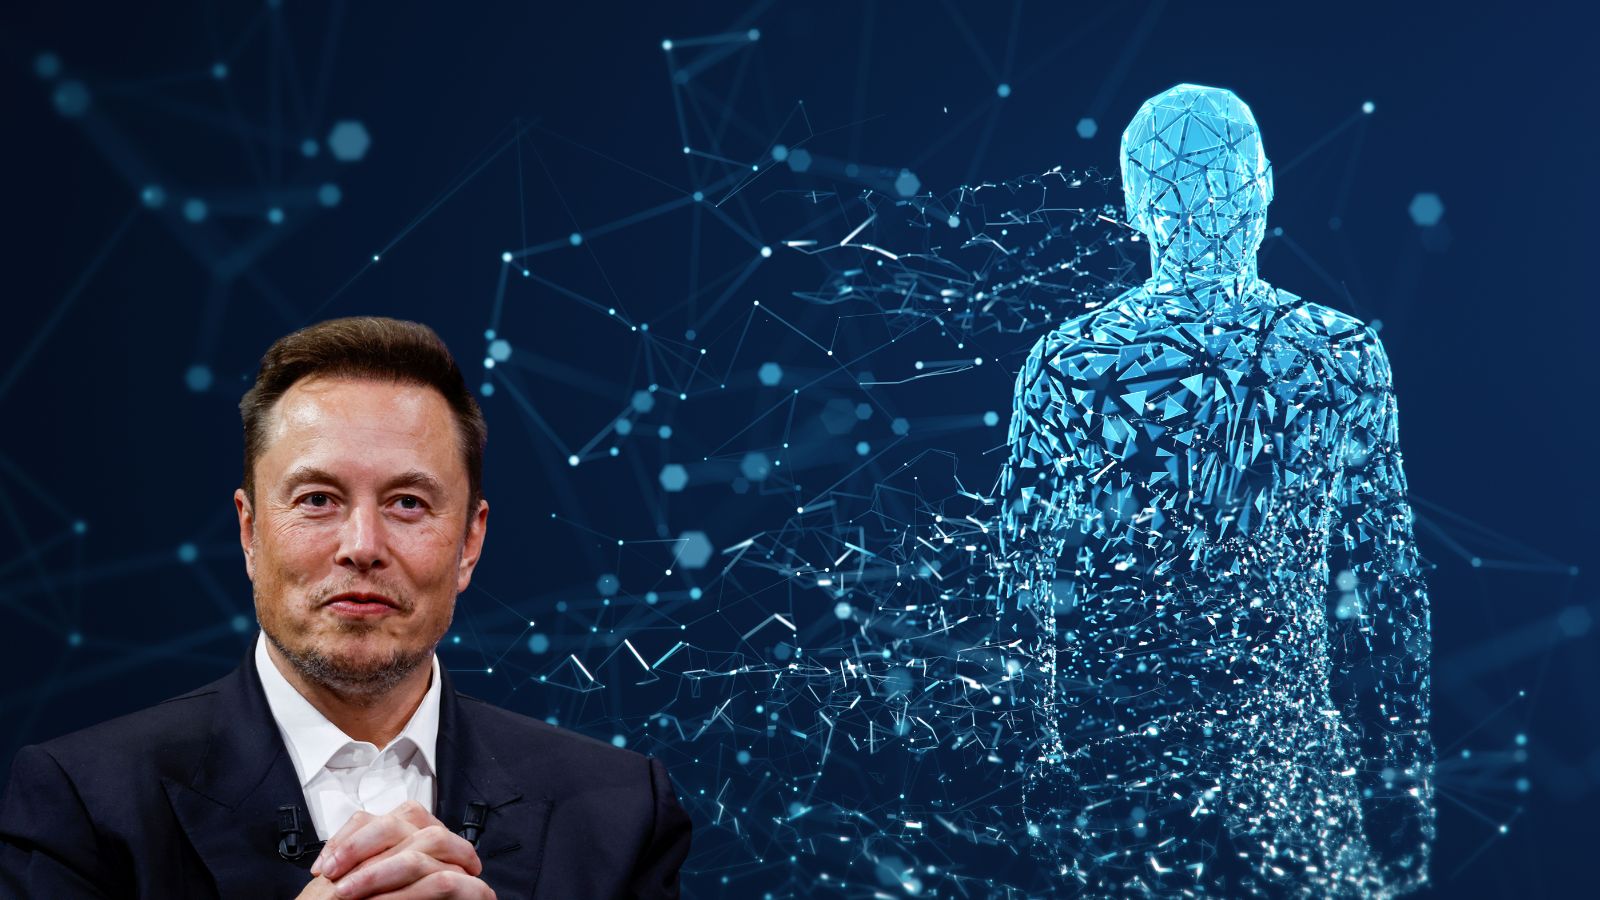 Elon Musk parla del futuro dell'intelligenza artificiale